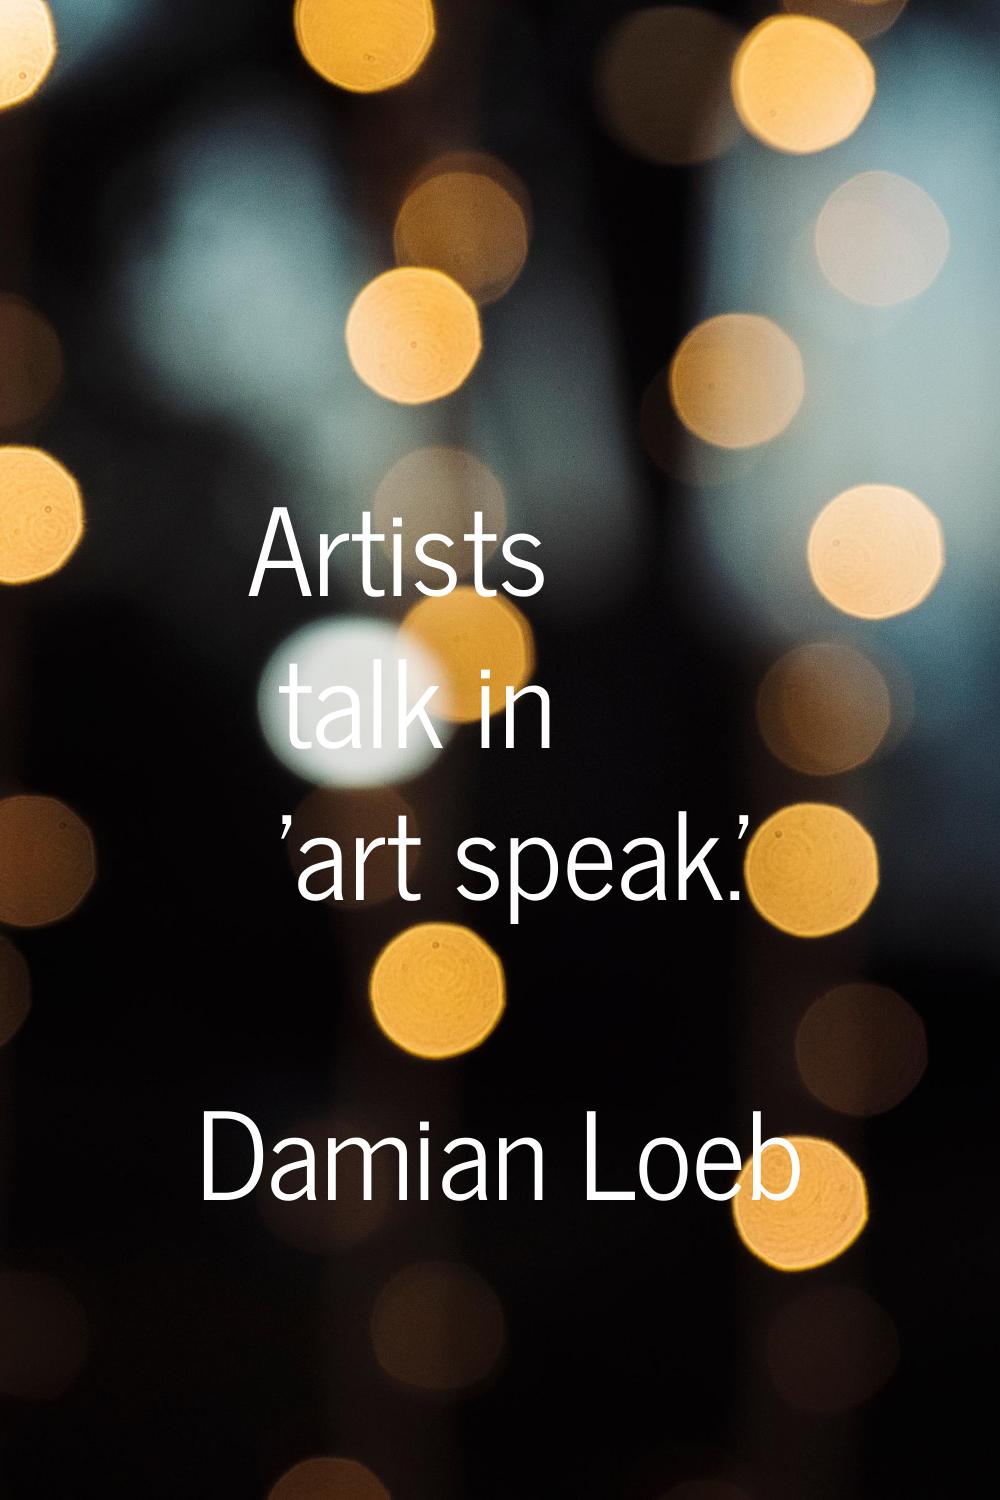 Artists talk in 'art speak.'